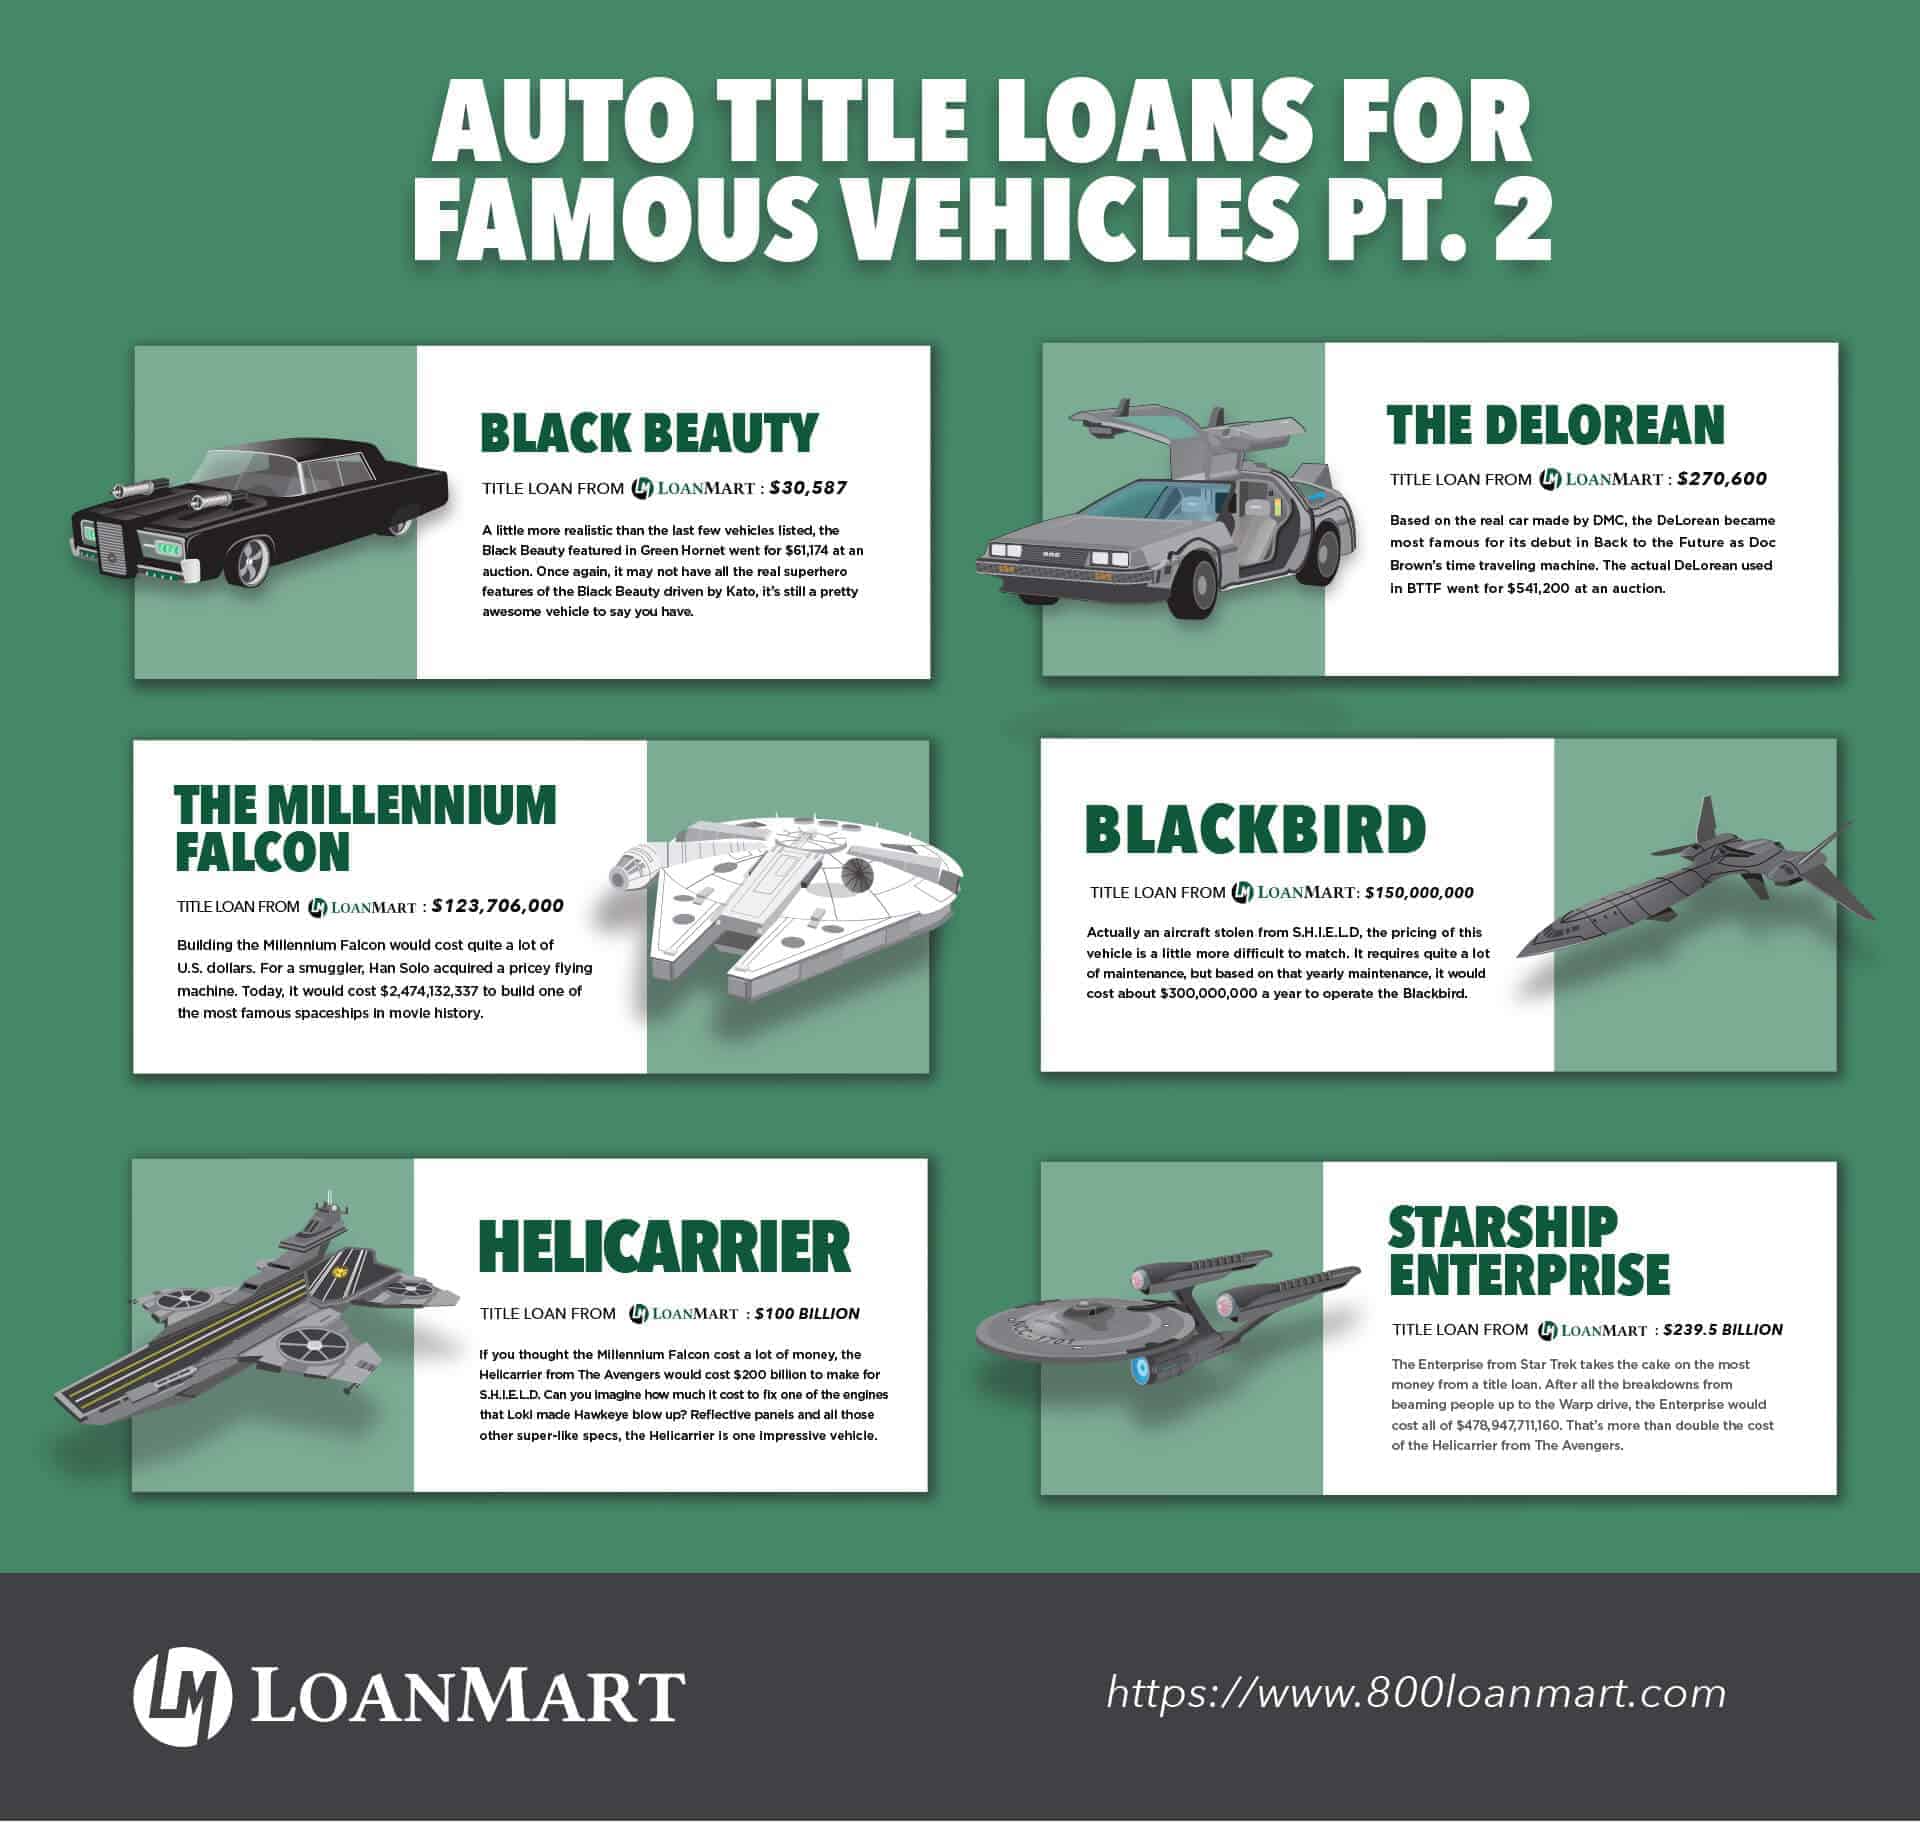 Auto Title Loans for Famous Vehicles Part 2